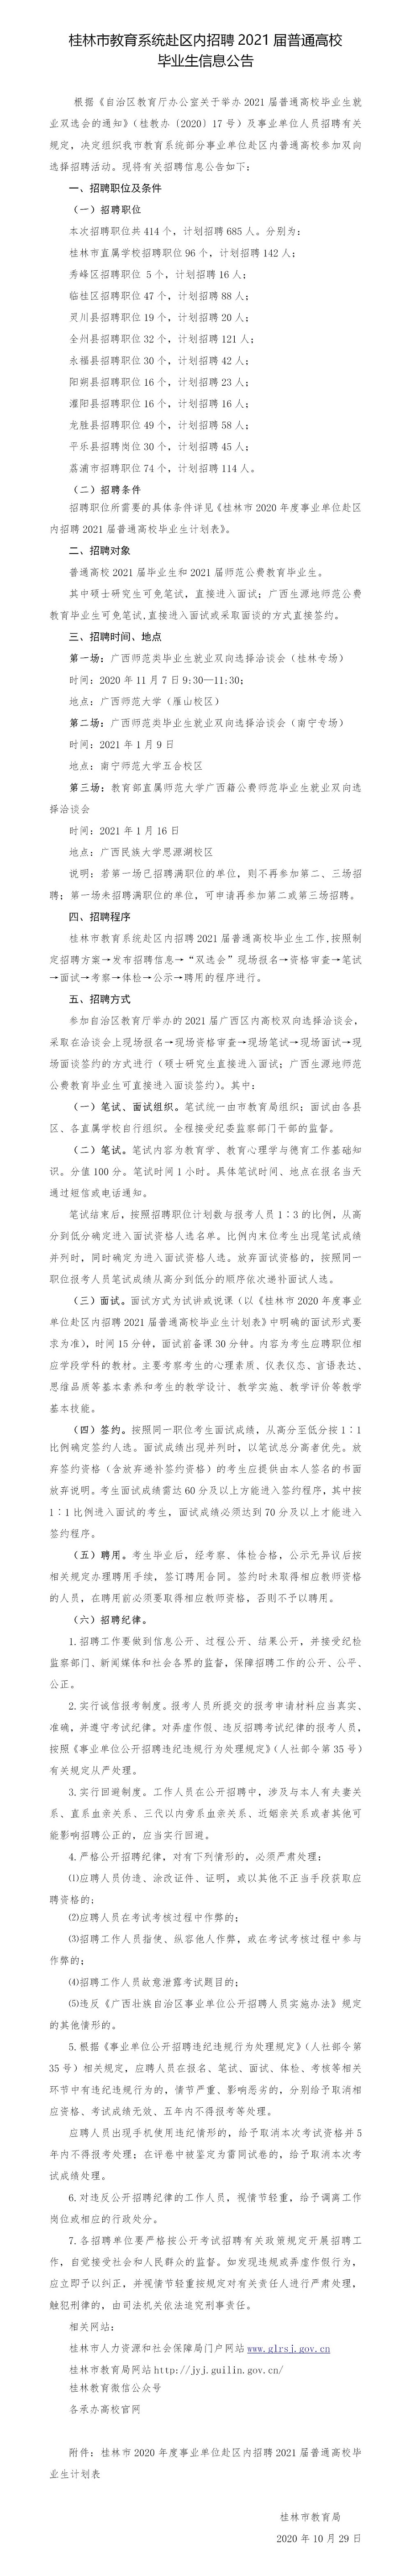 广西桂林市教育系统赴区内招聘2021届毕业生685人公告